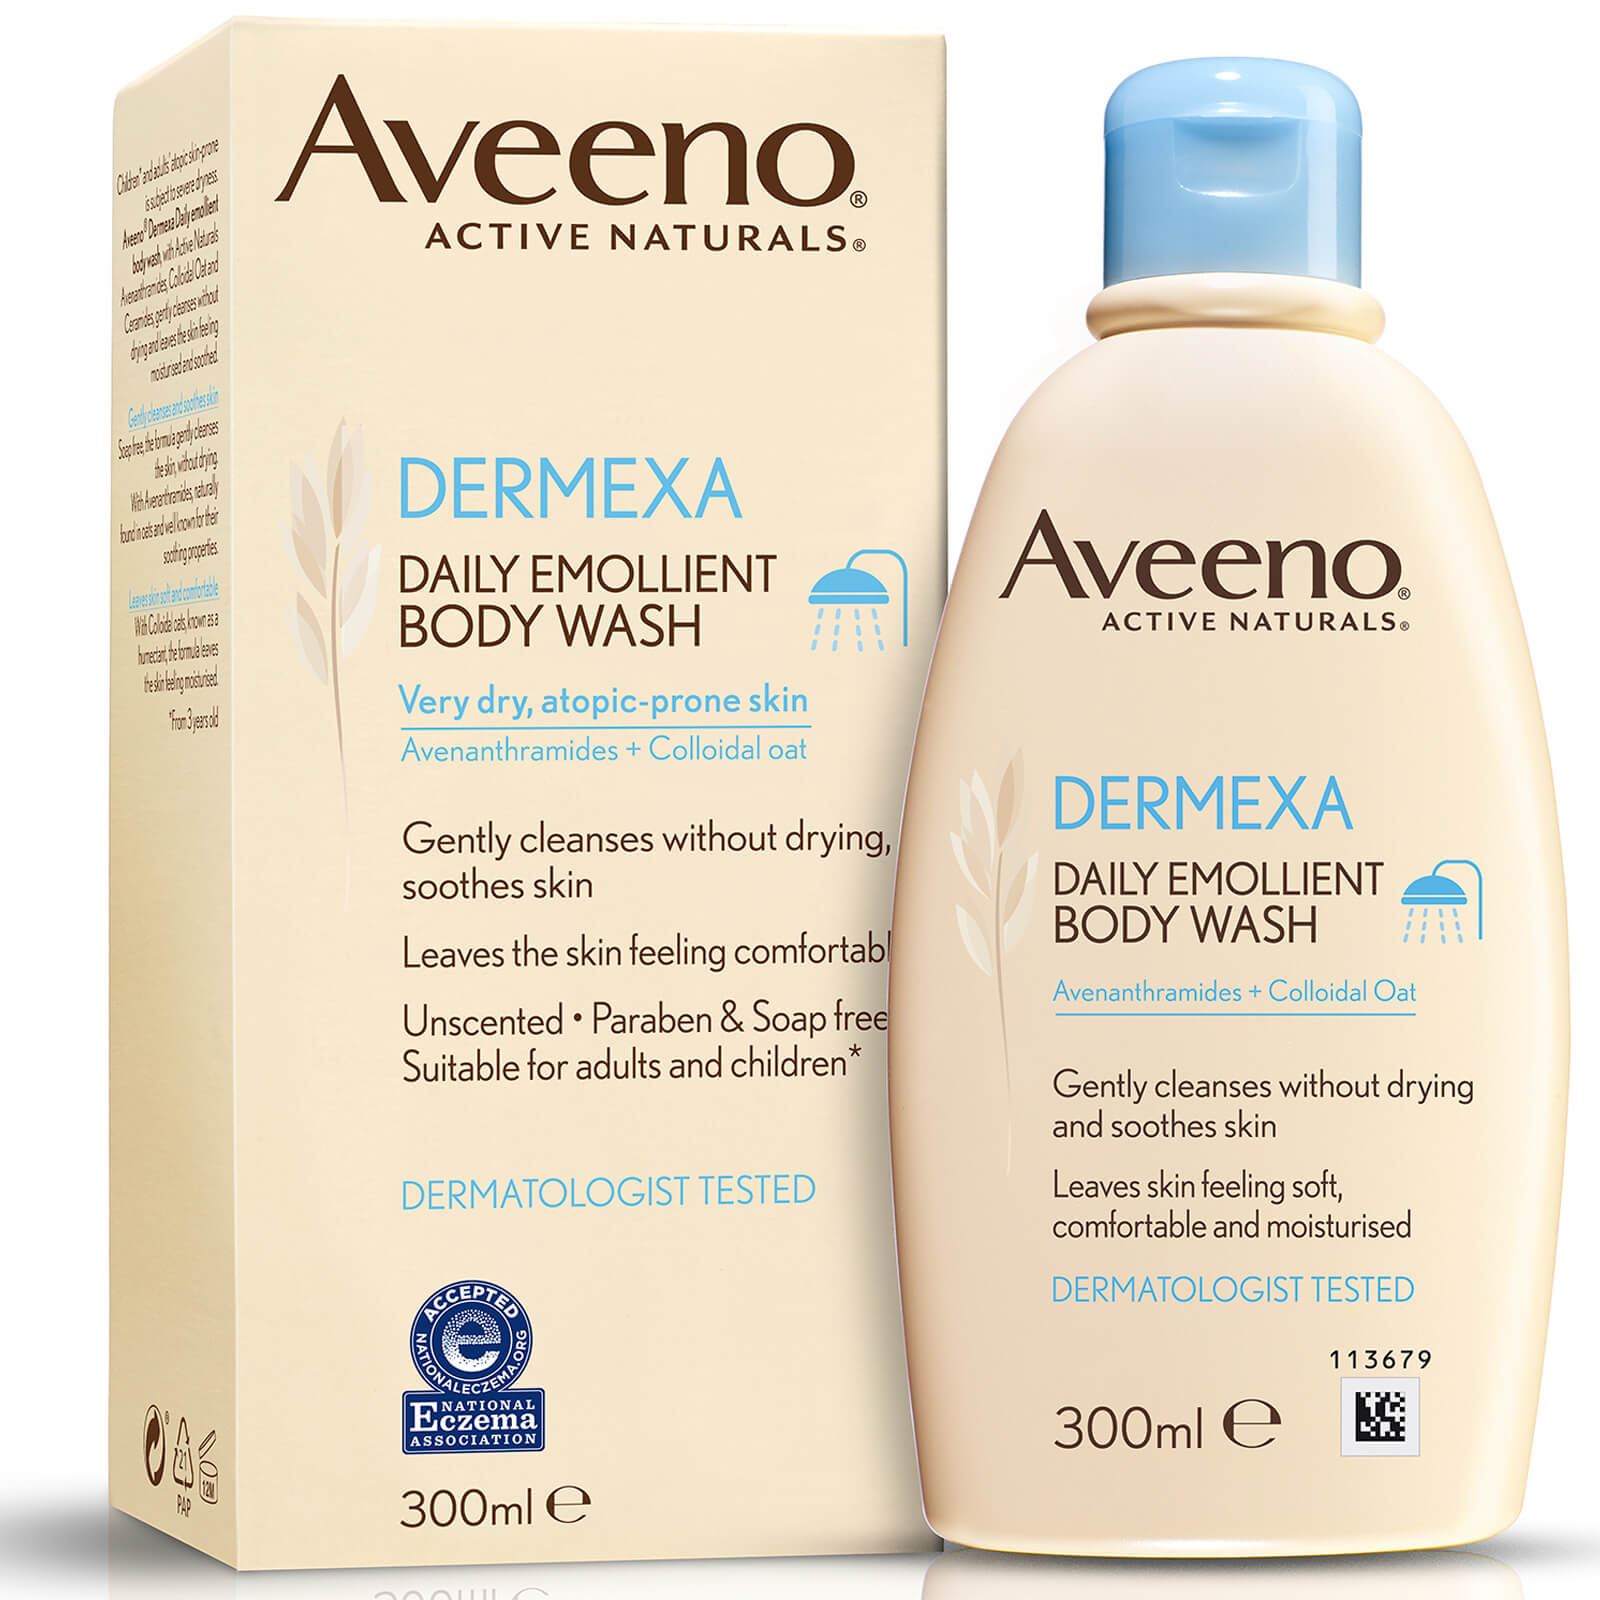 Aveeno Dermexa Daily Emollient Body Wash 300ml